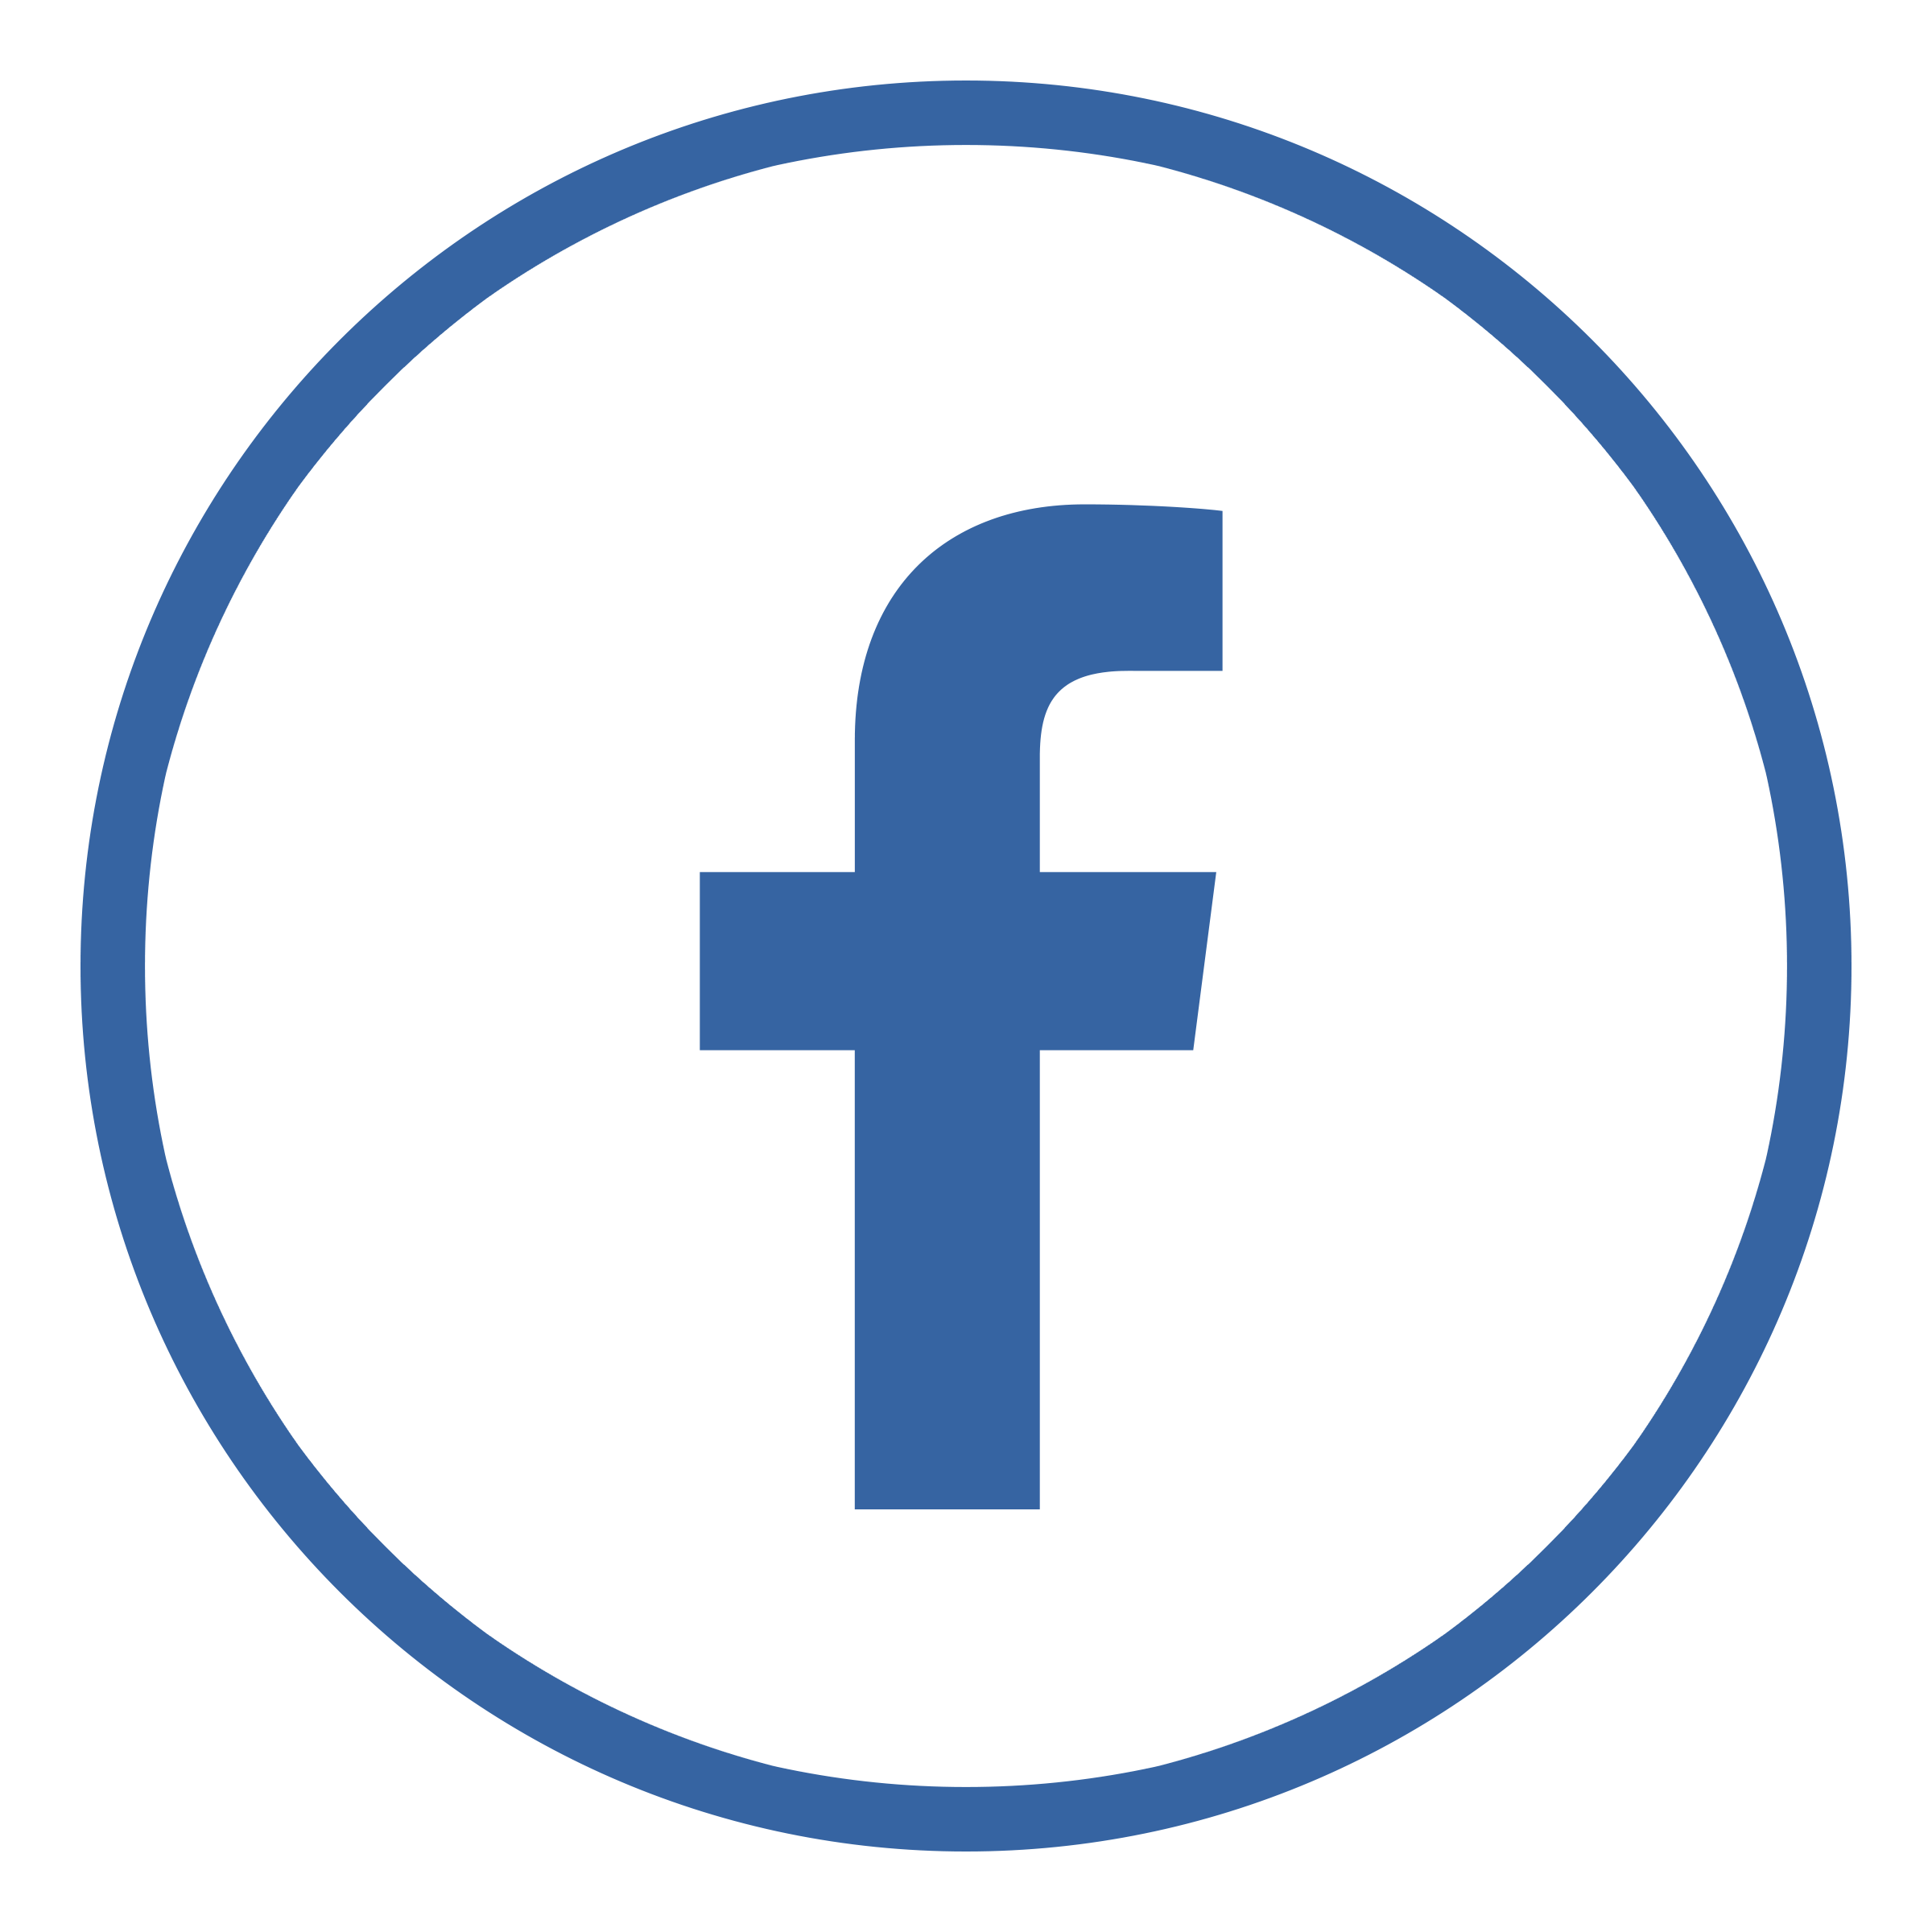 Logo Facebook Vector At Collection Of Logo Facebook